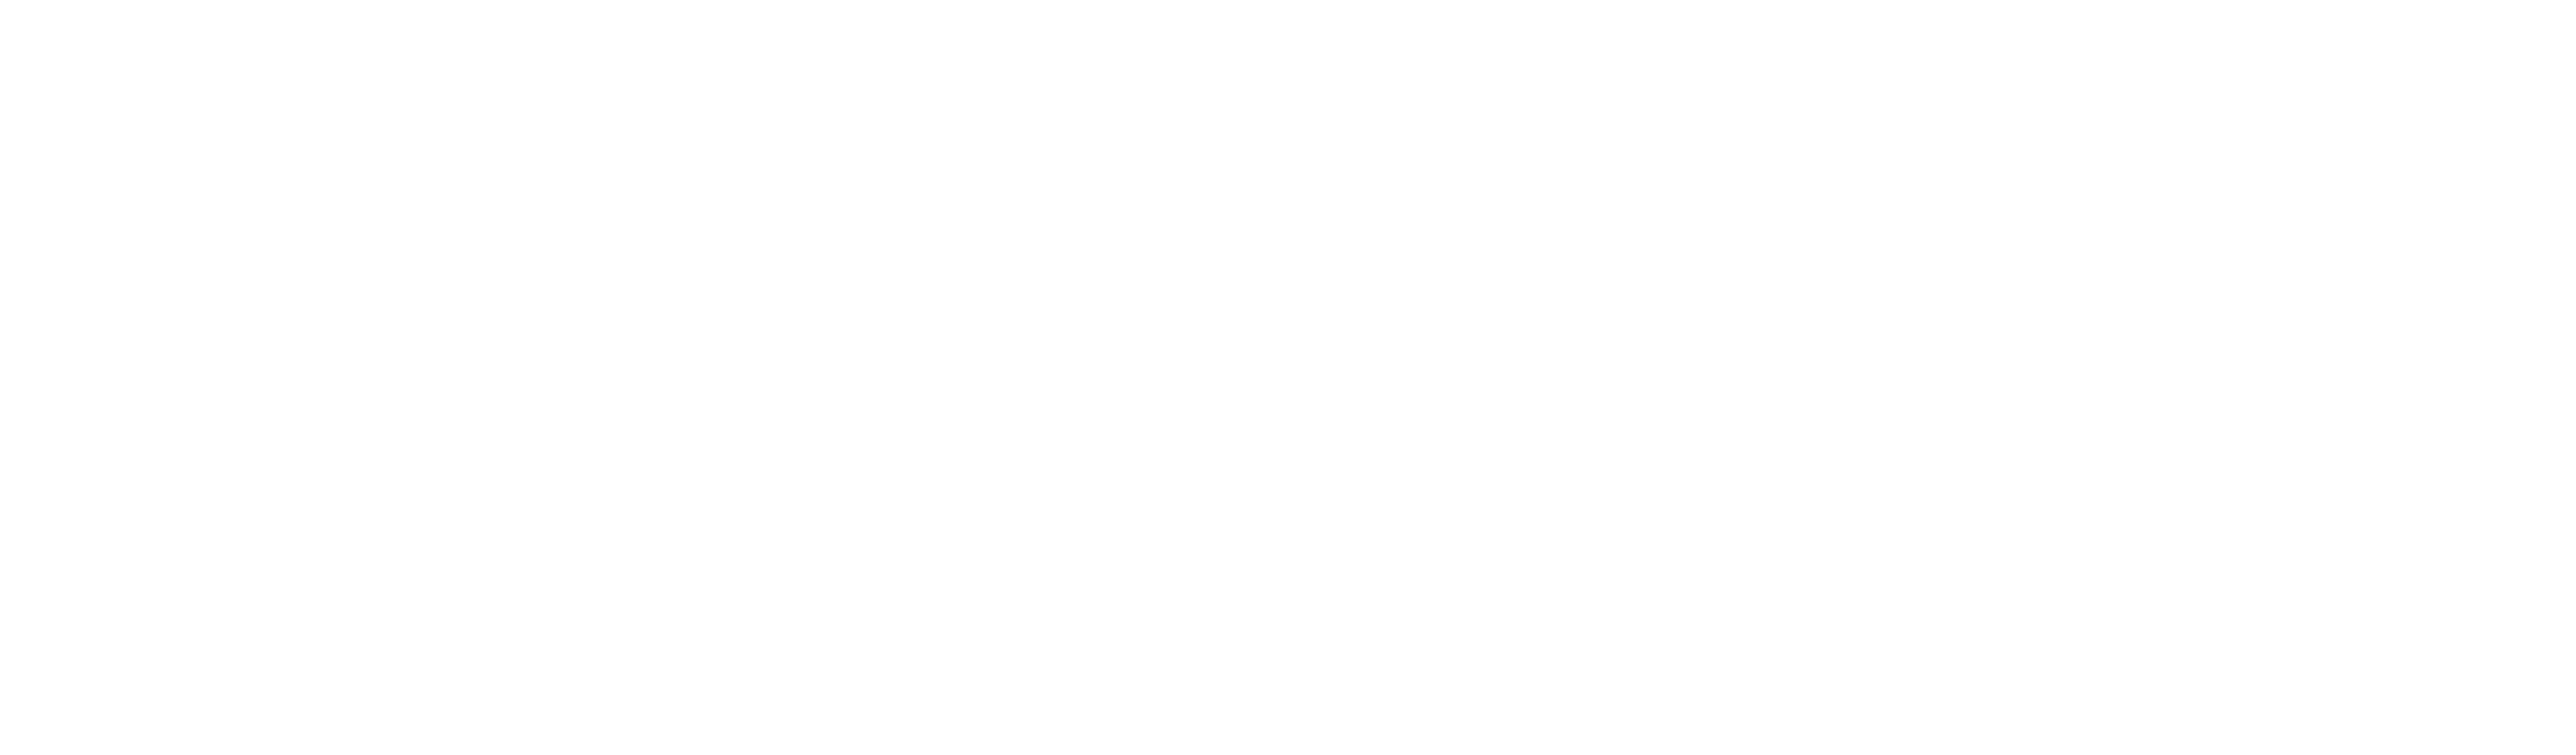 LendingUSA_Logo_TRUEFINAL